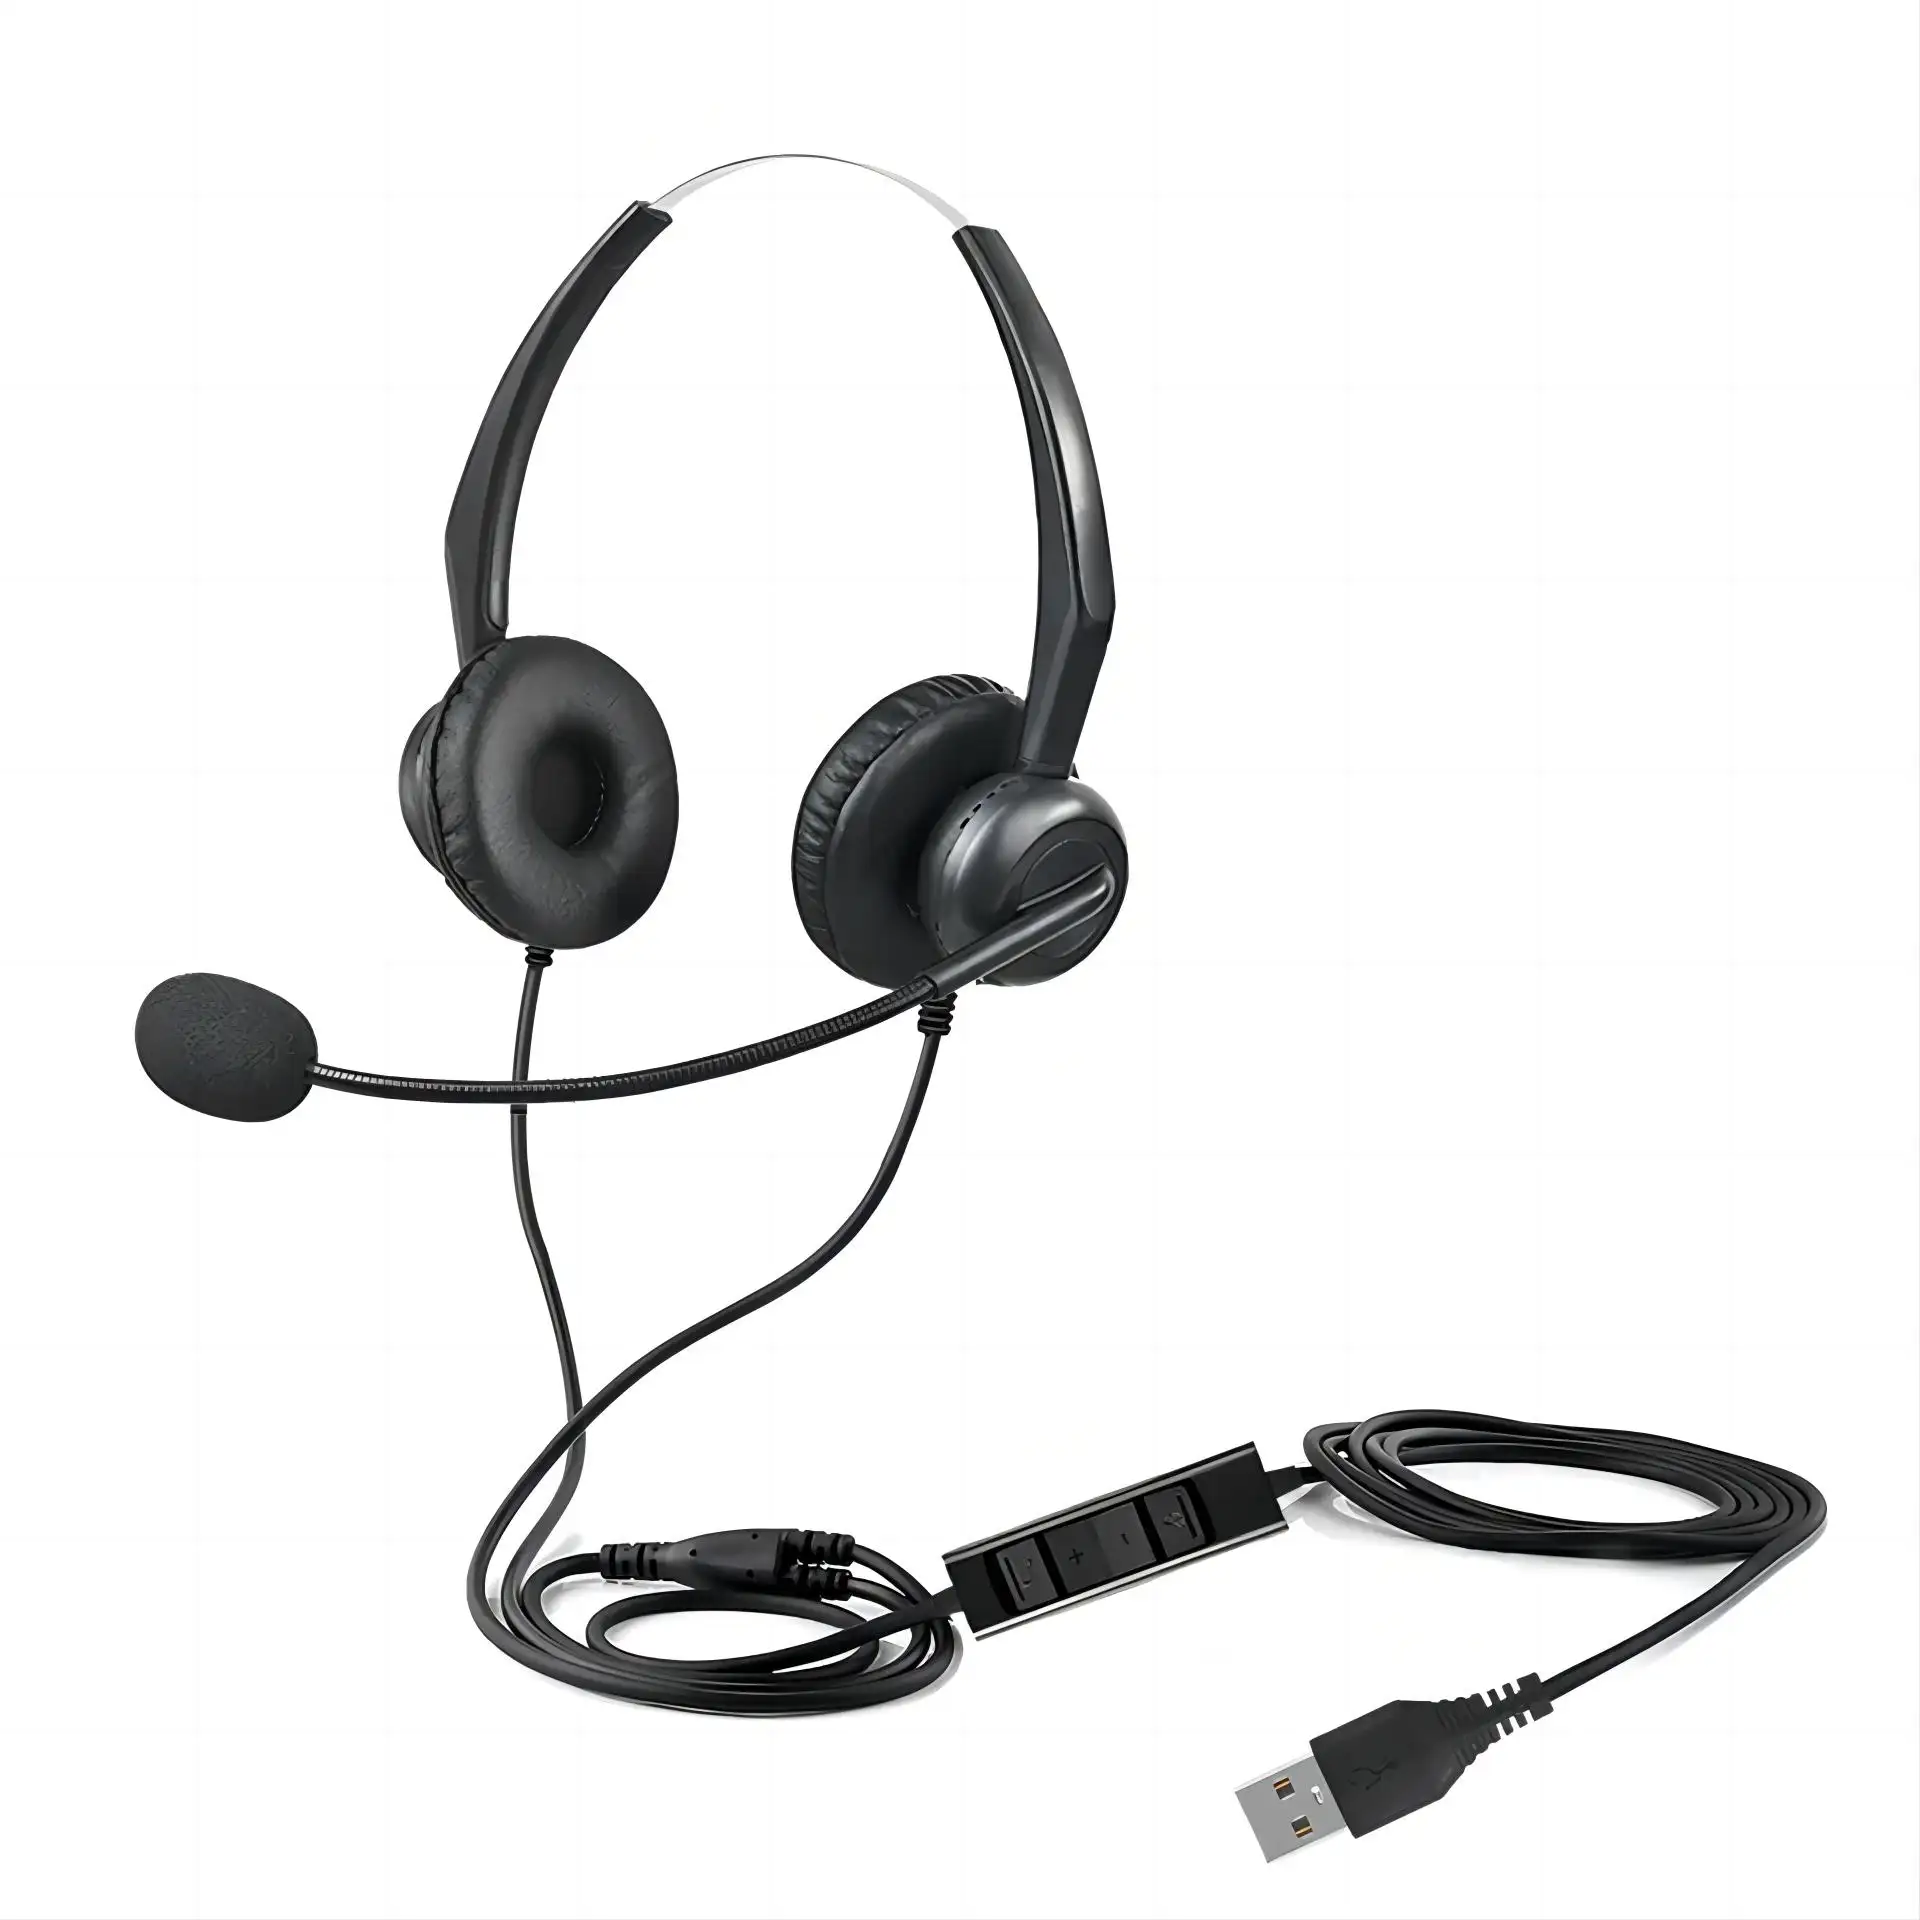 Meilleure qualité pas cher filaire USB bureau casque affaires écouteur antibruit casque avec micro Flexible pour centre d'appels